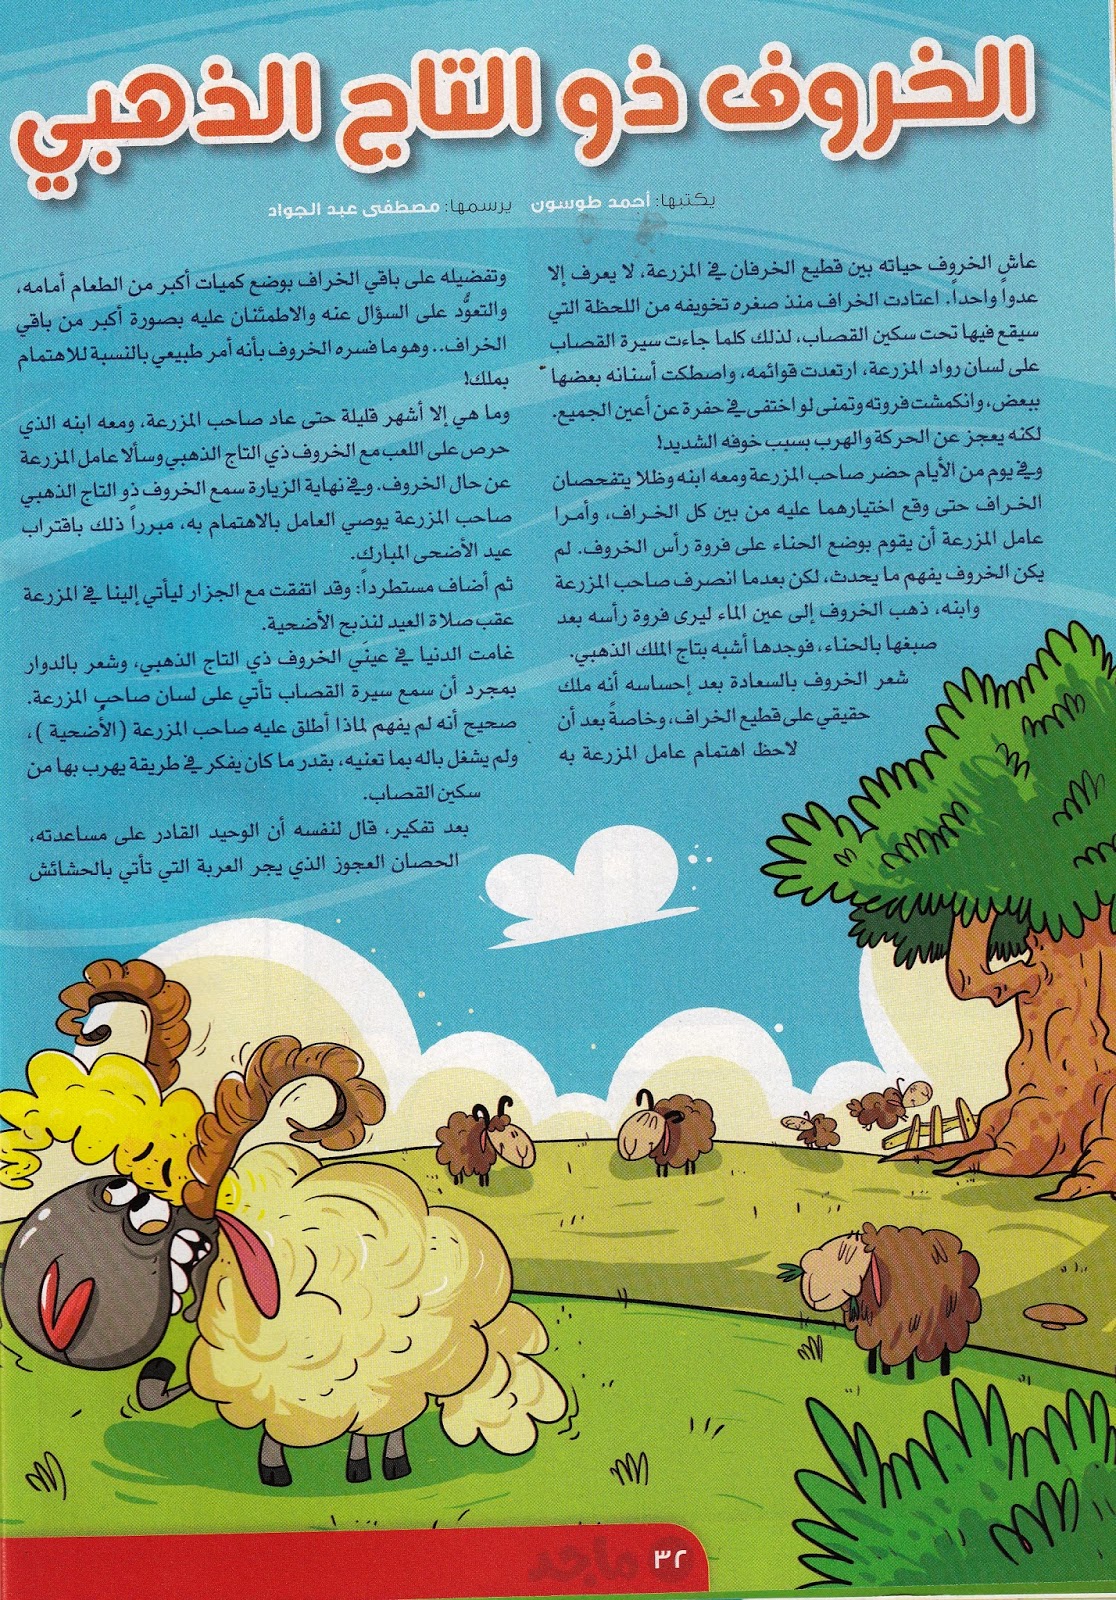 "الخروف ذو التاج الذهبي" قصة للأطفال بقلم: أحمد طوسون 2222